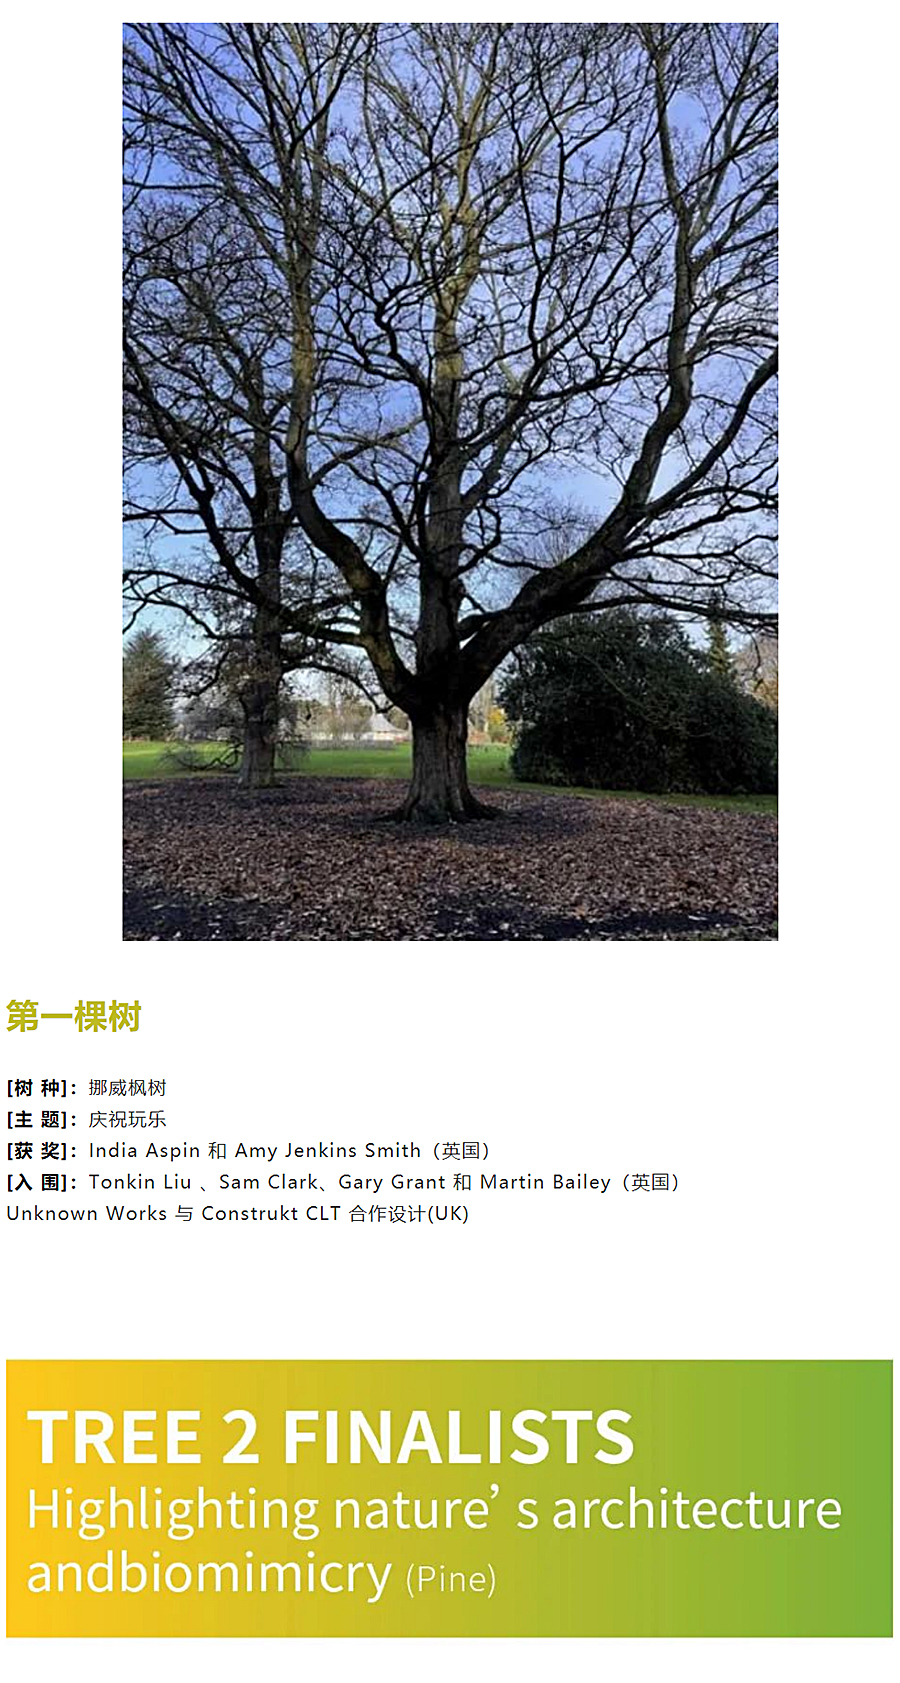 弹奏起自然的音符——伦敦皇家植物园「树屋」设计大奖揭晓_0010_图层-11.jpg